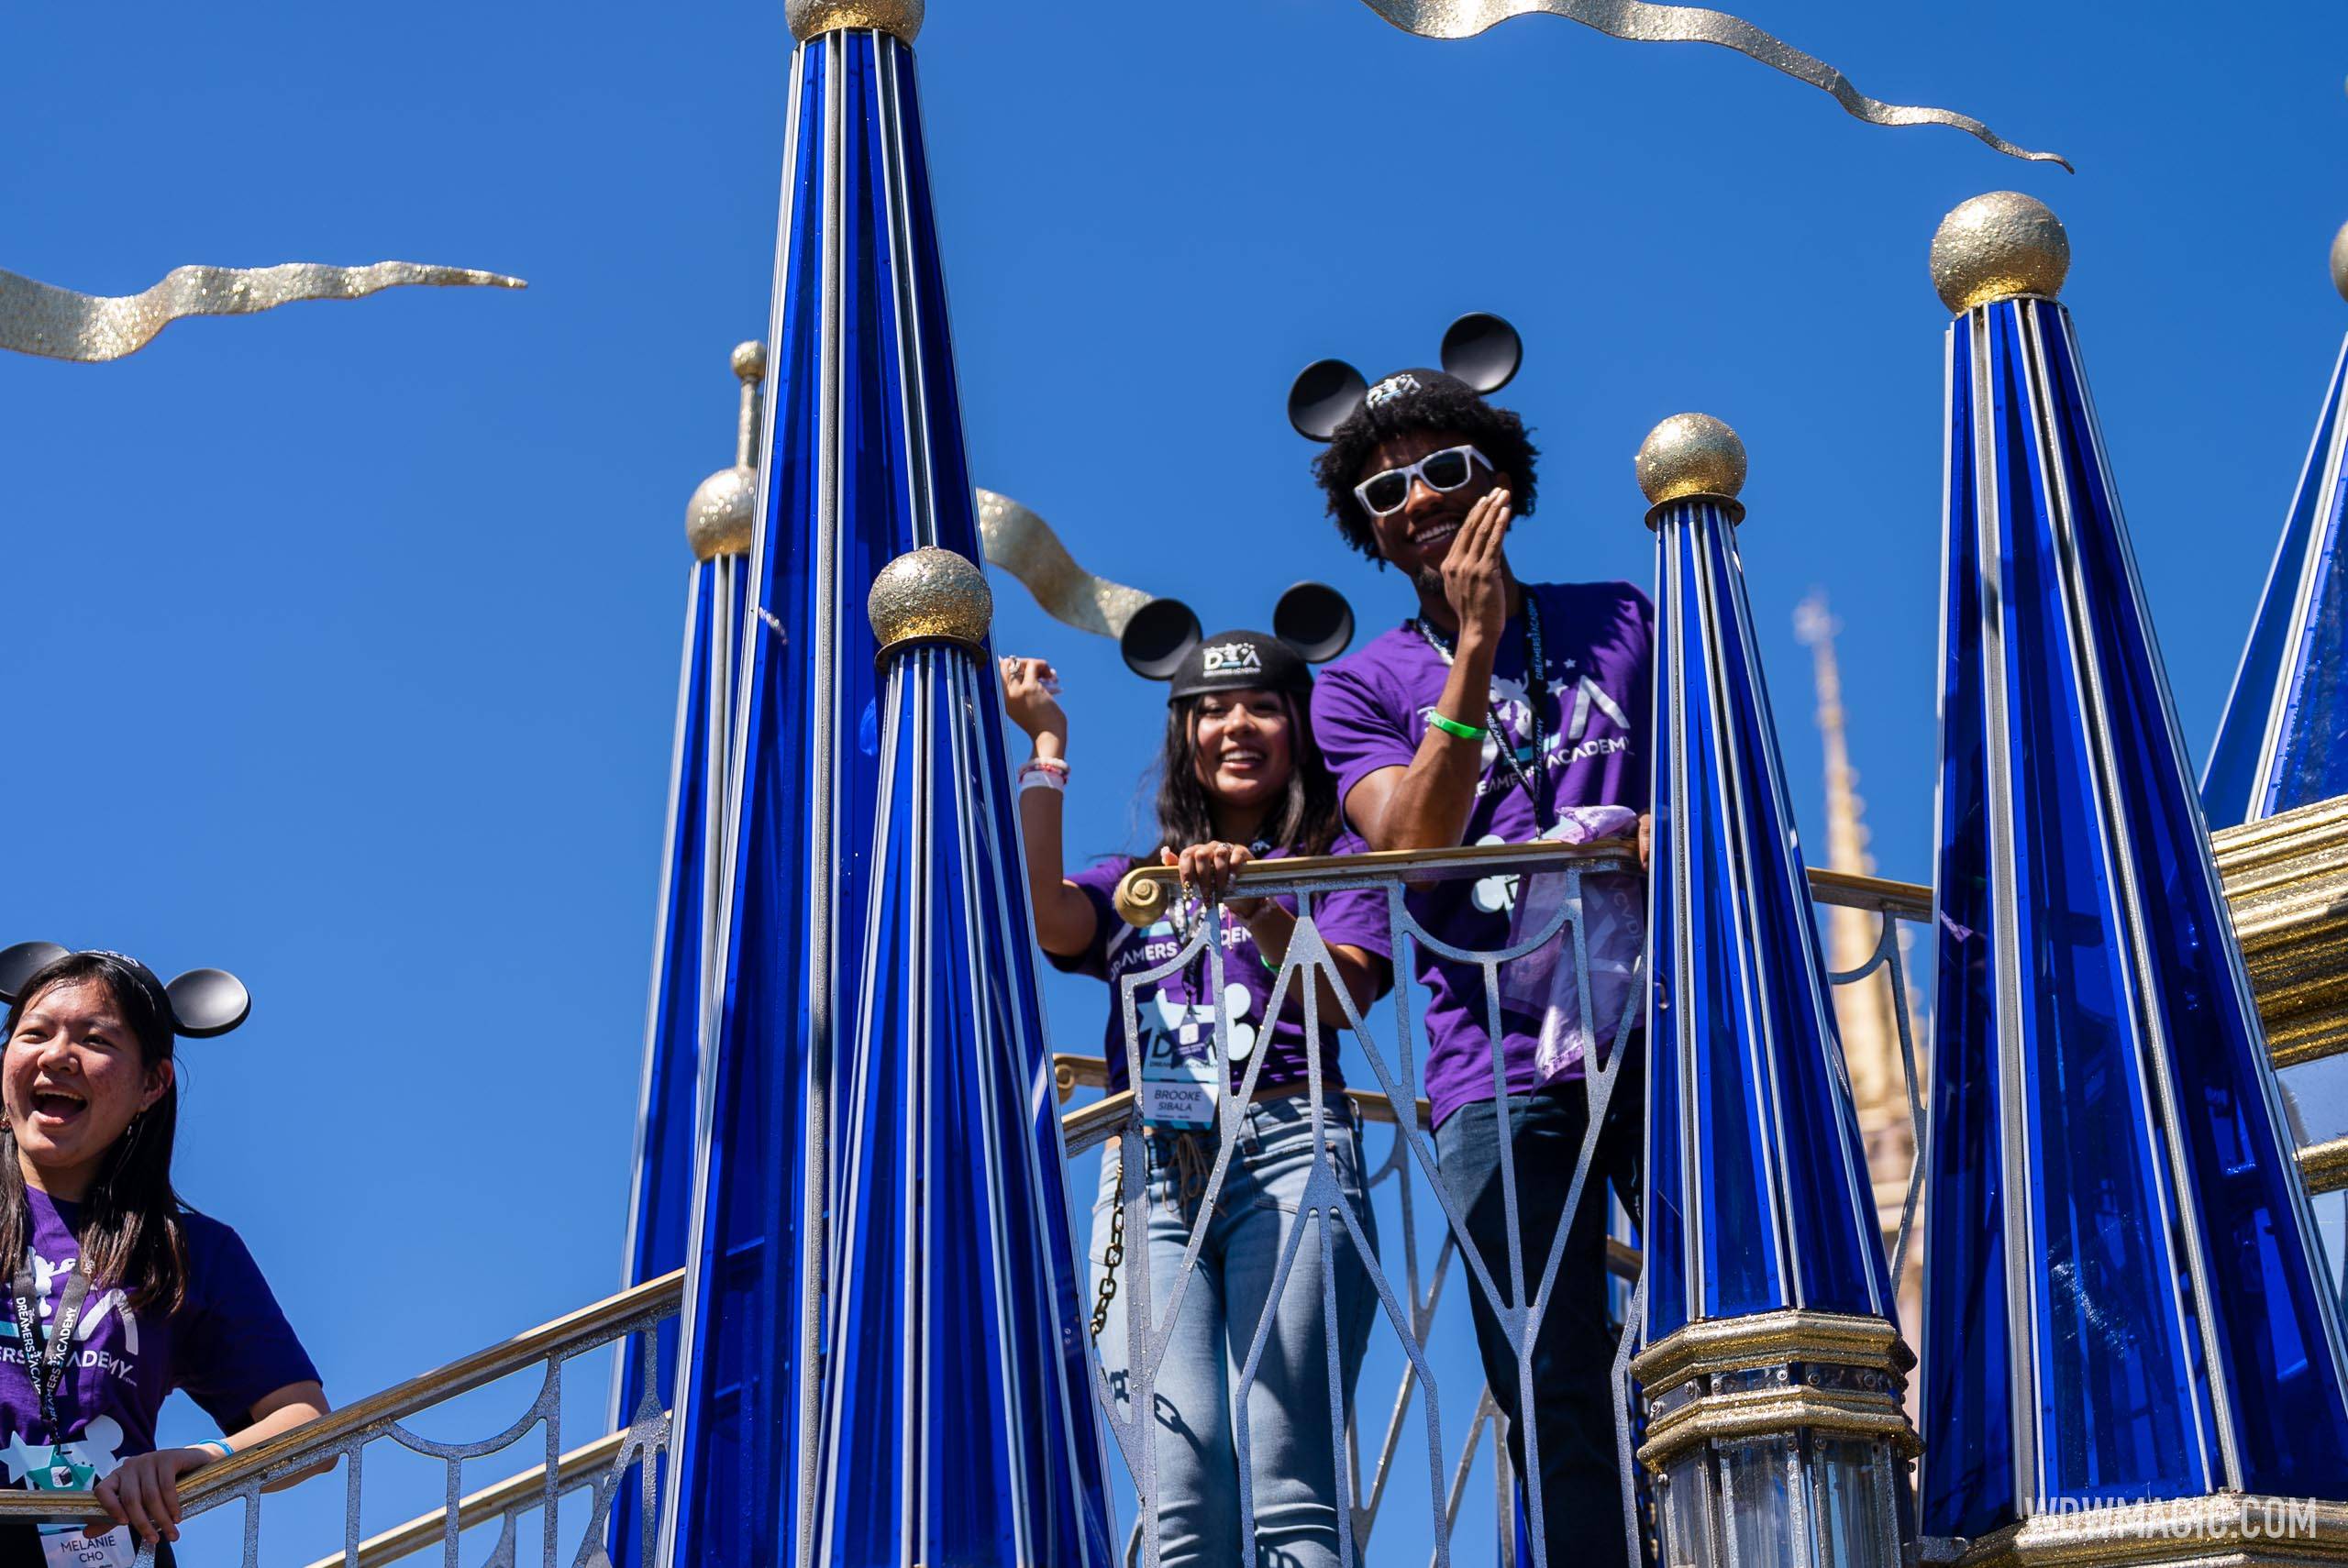 Disney Dreamers Academy Class of 2023 Magic Kingdom Parade